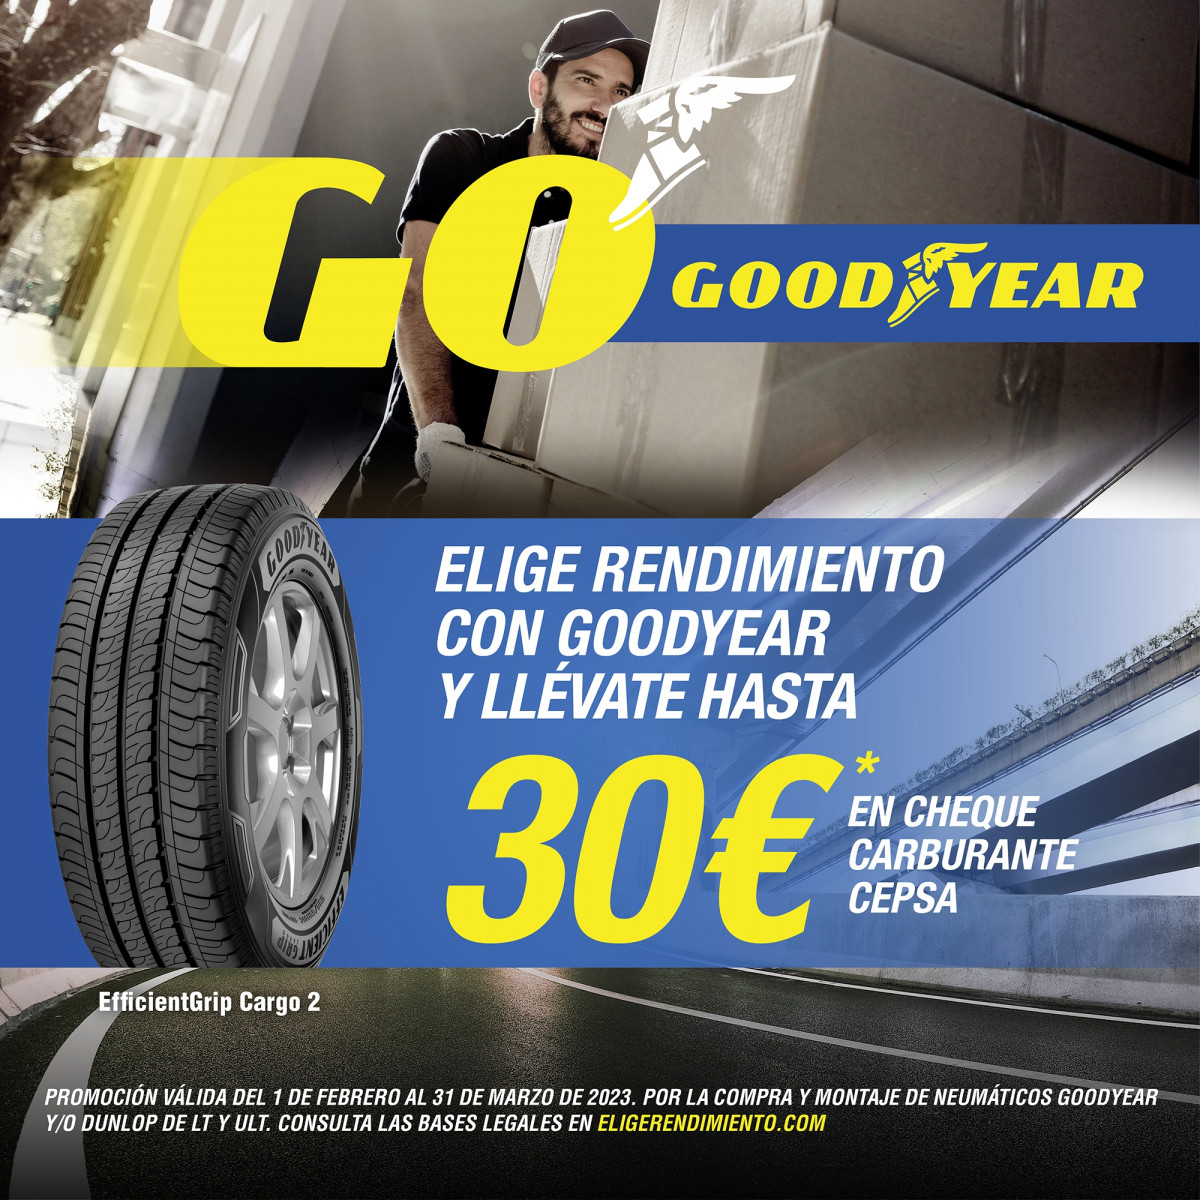 Goodyear dará cheques para carburante a las furgonetas que cambien sus neumáticos